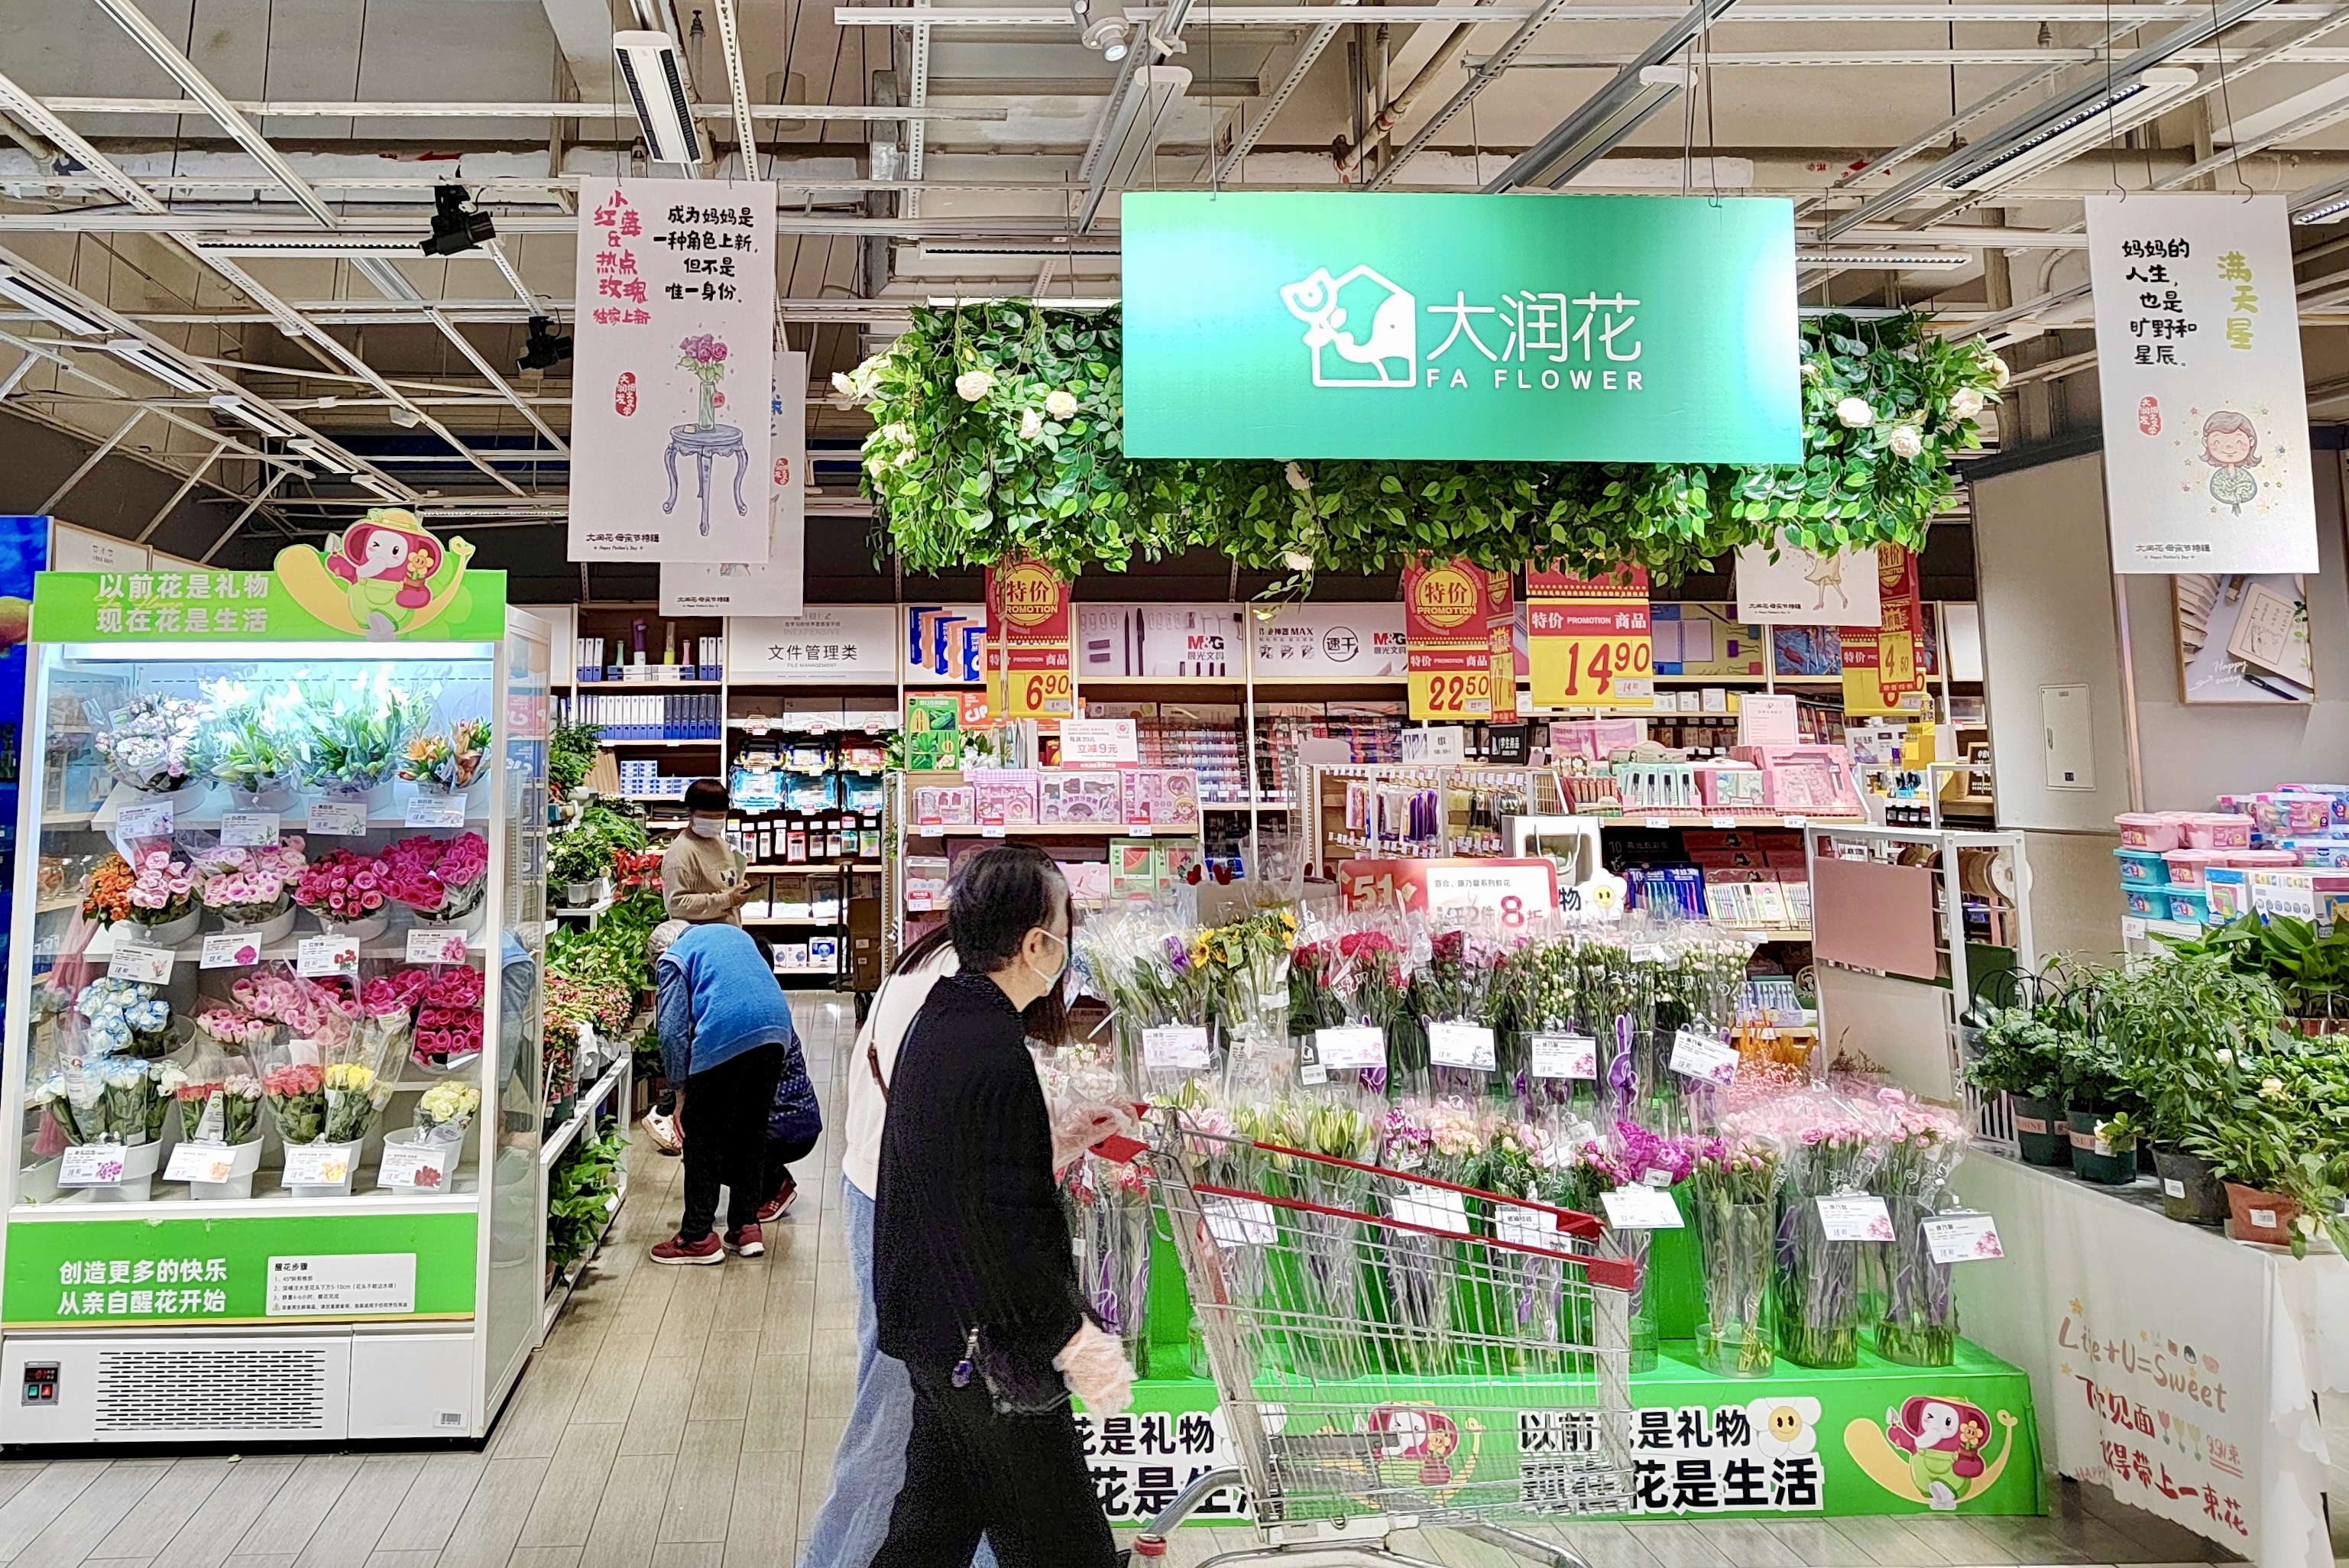 大润发正式推出鲜花业务品牌大润花,玫瑰新品母亲节独家上市